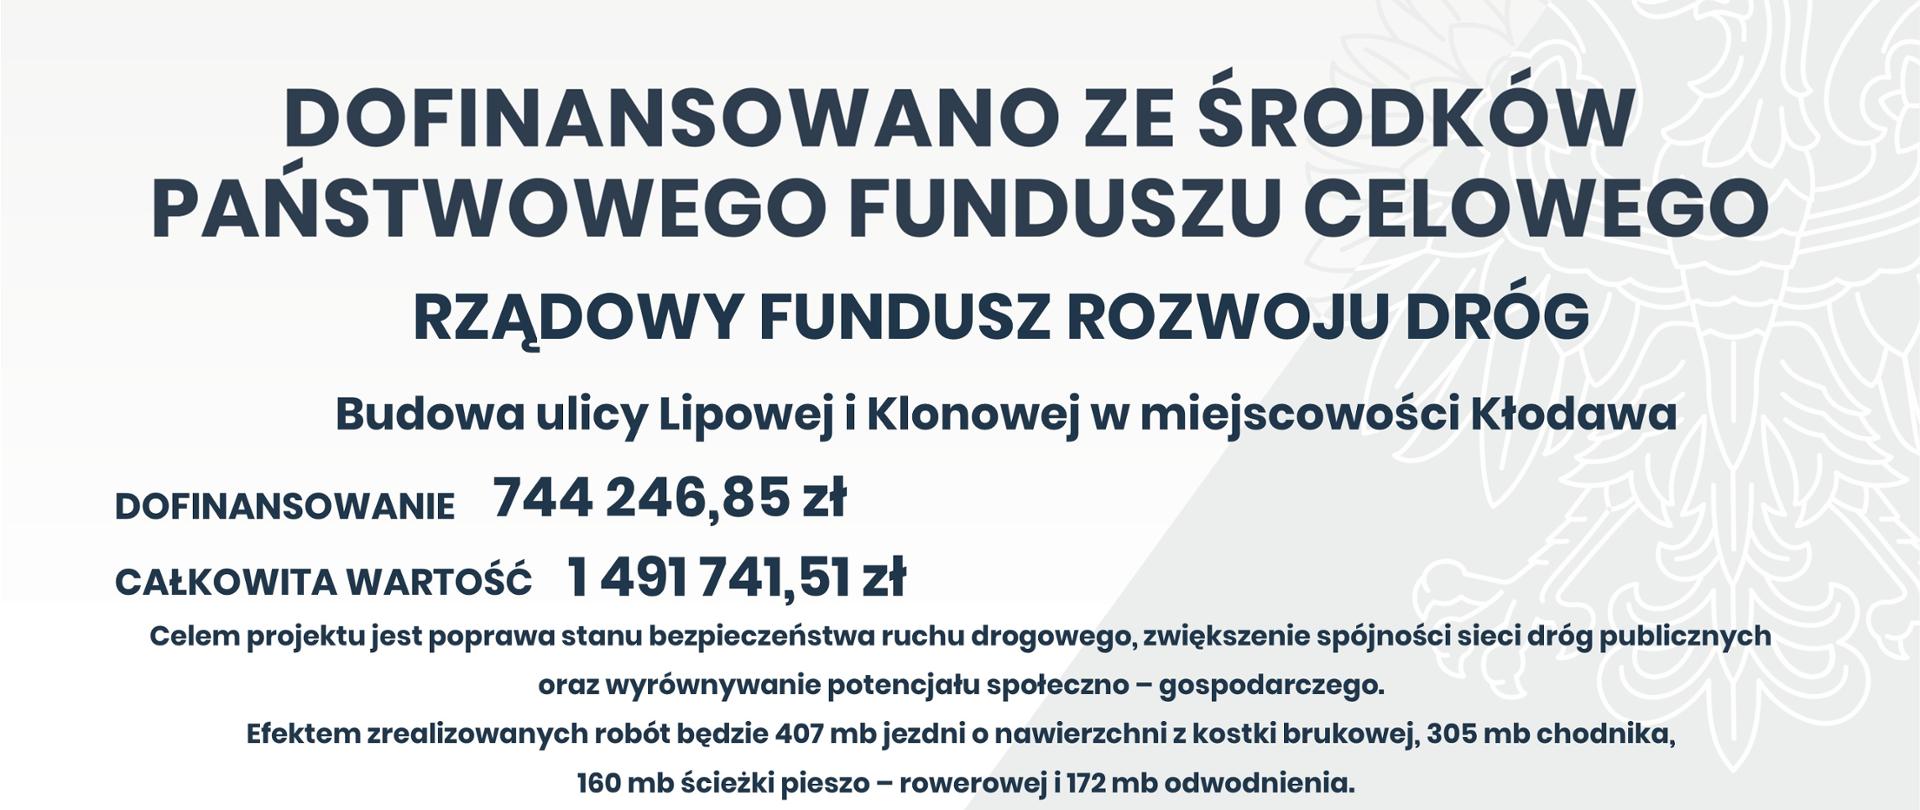 Budowa ulicy Lipowej i Klonowej w miejscowości Kłodawa - tablica informacyjna